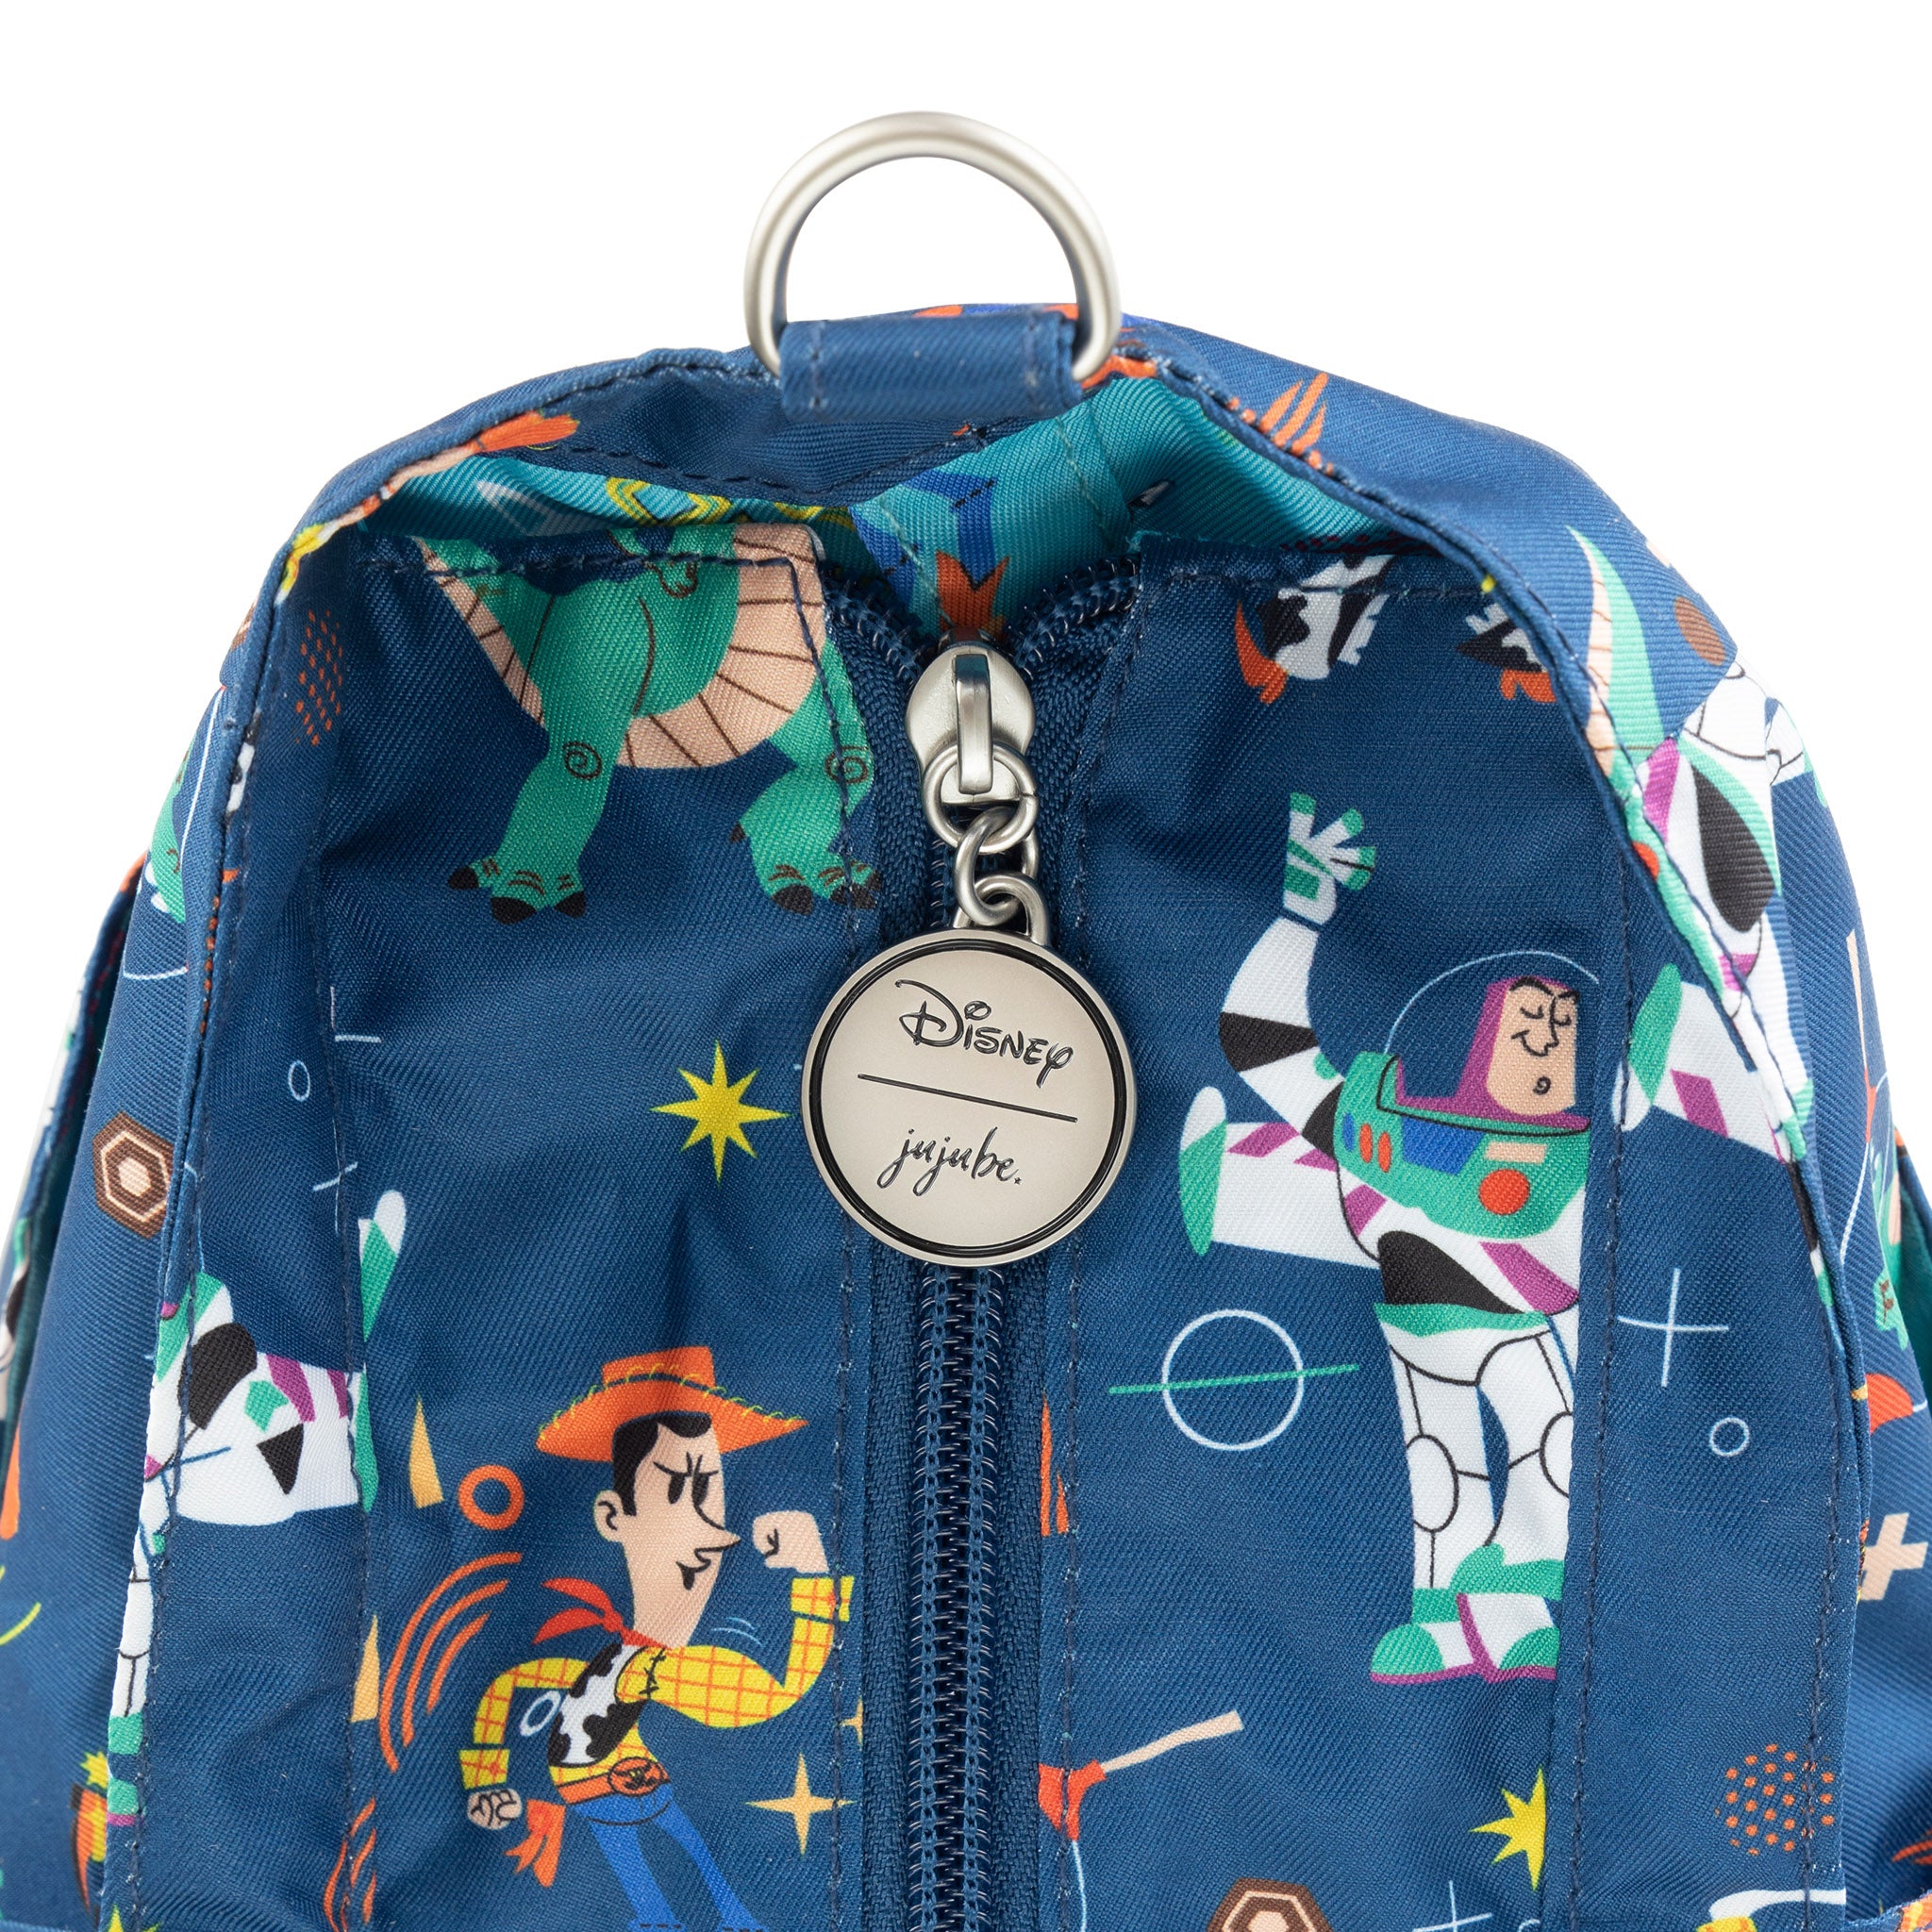 Jujube Disney Pixar Toy Story Super Be Plus large tote bag zipper pull closeup